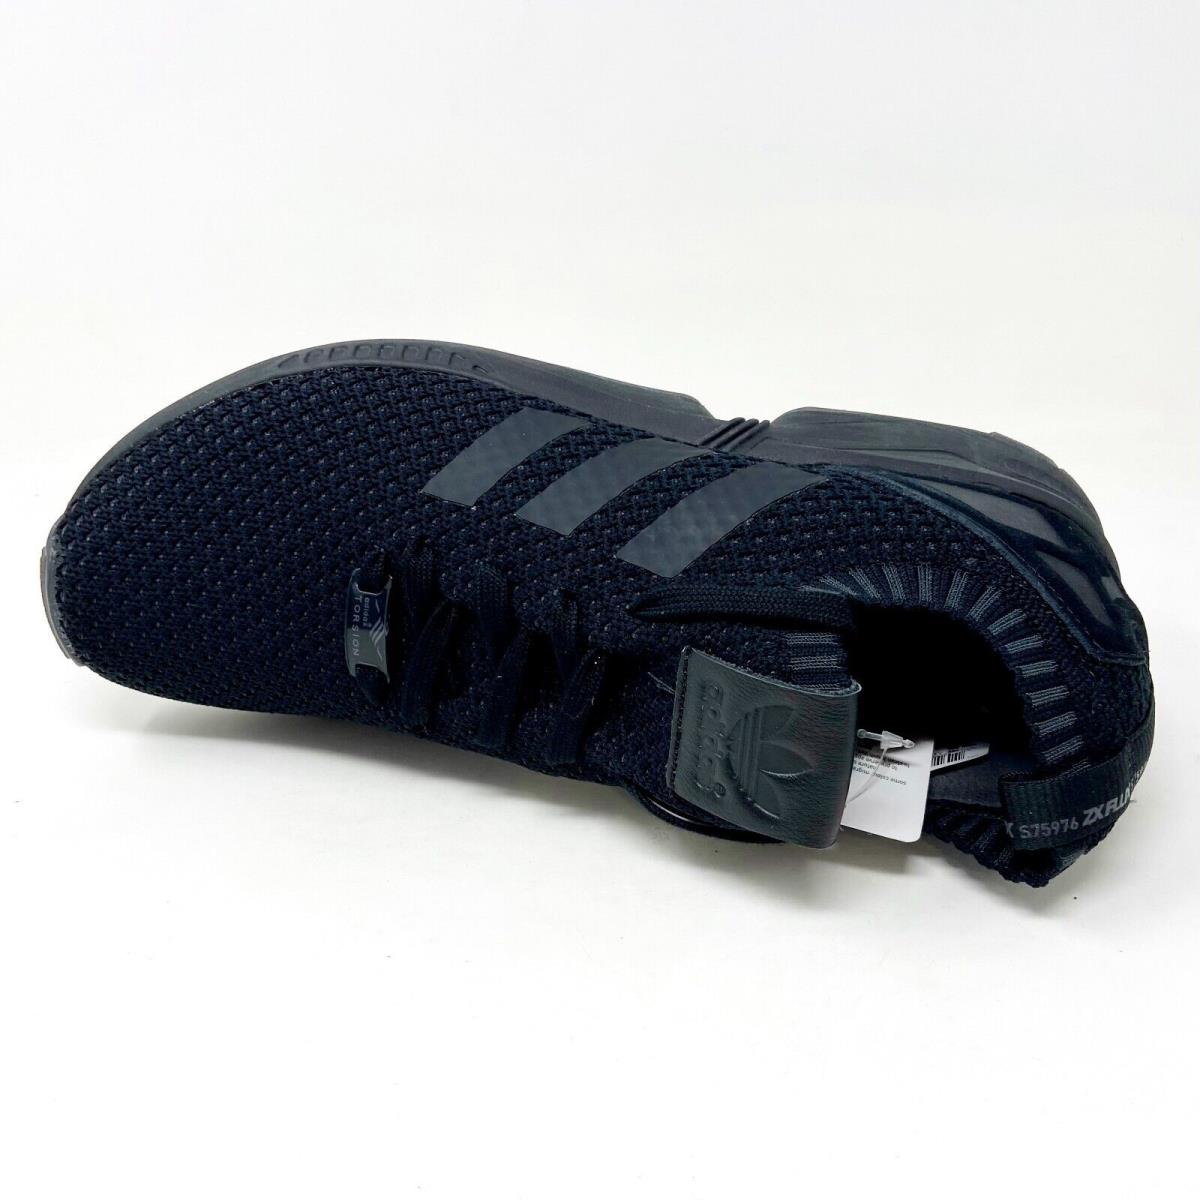 Adidas shoes Flux - Black 2